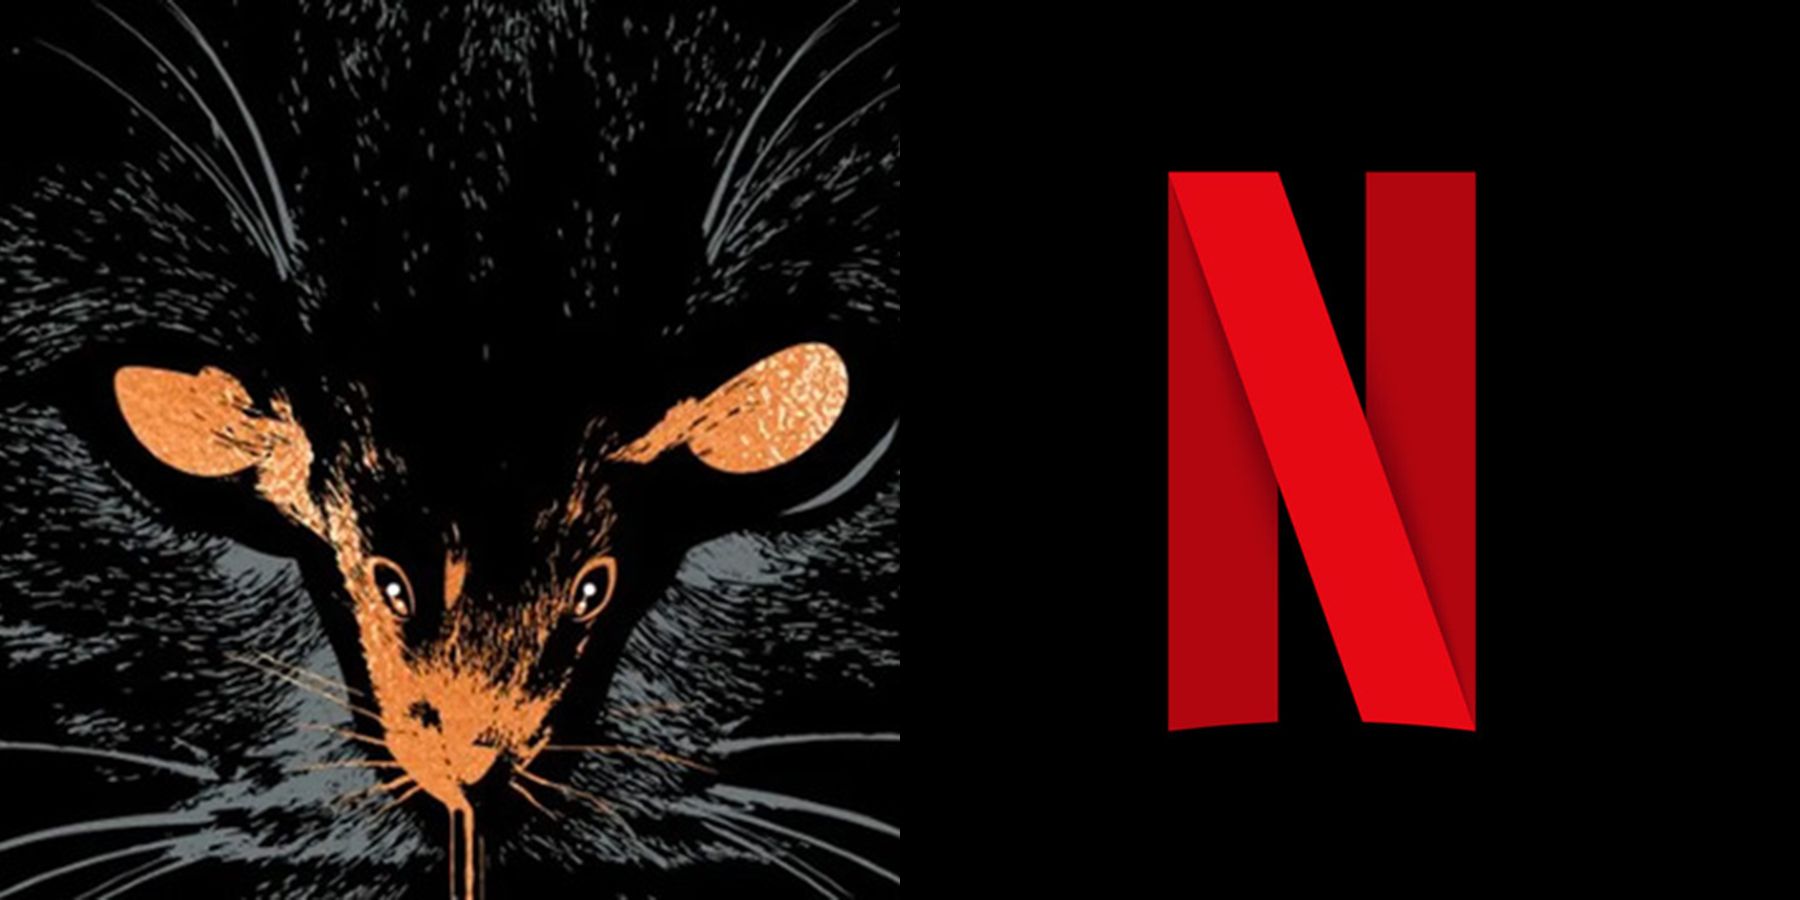 ჯეისონ ბლუმი და რაიან მერფი აწარმოებენ სტივენ კინგის ადაპტაციას Netflix-ისთვის